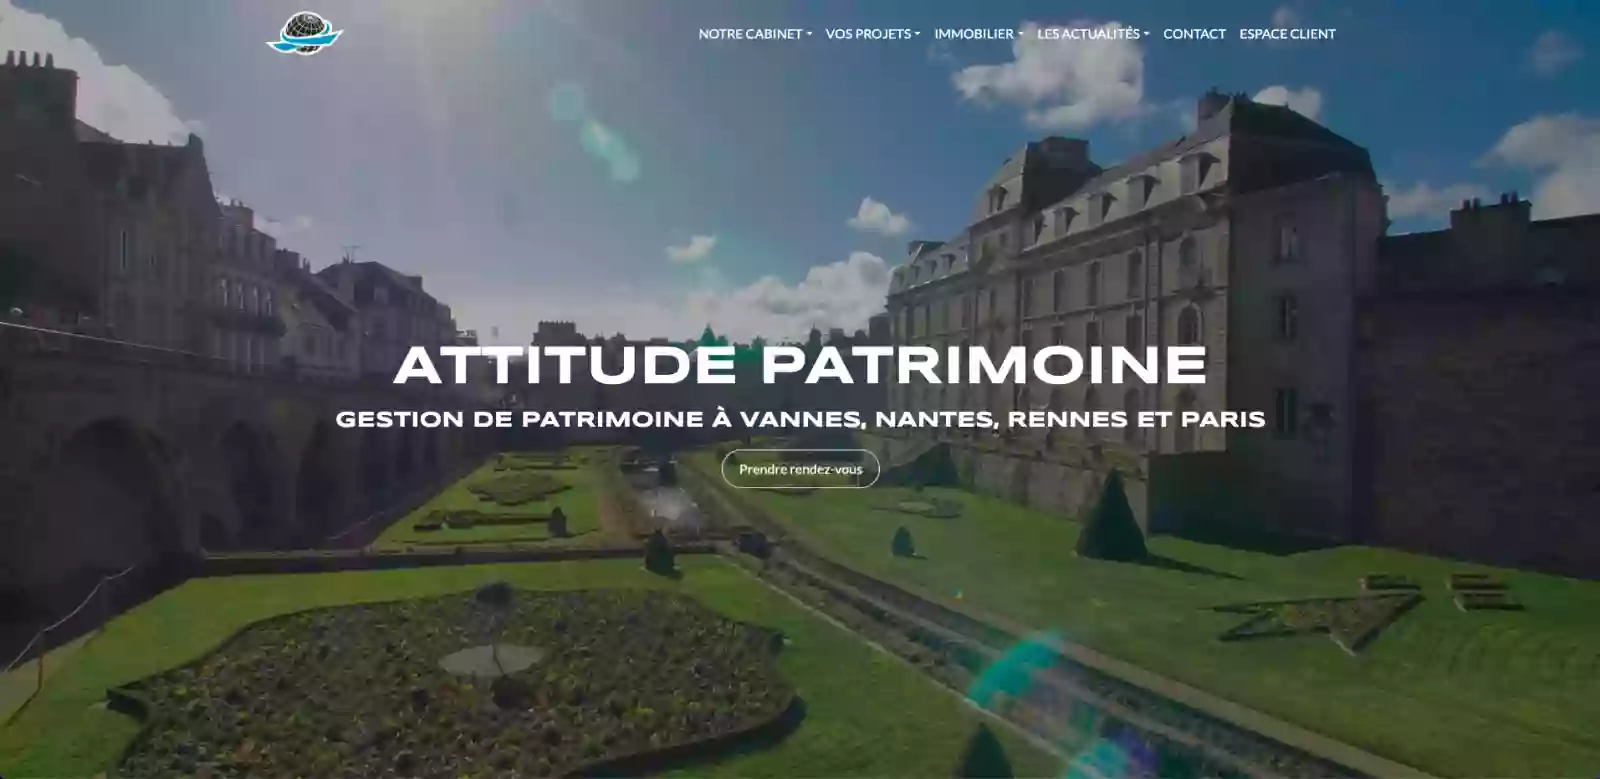 Attitude Patrimoine - Gestion de patrimoine à Vannes